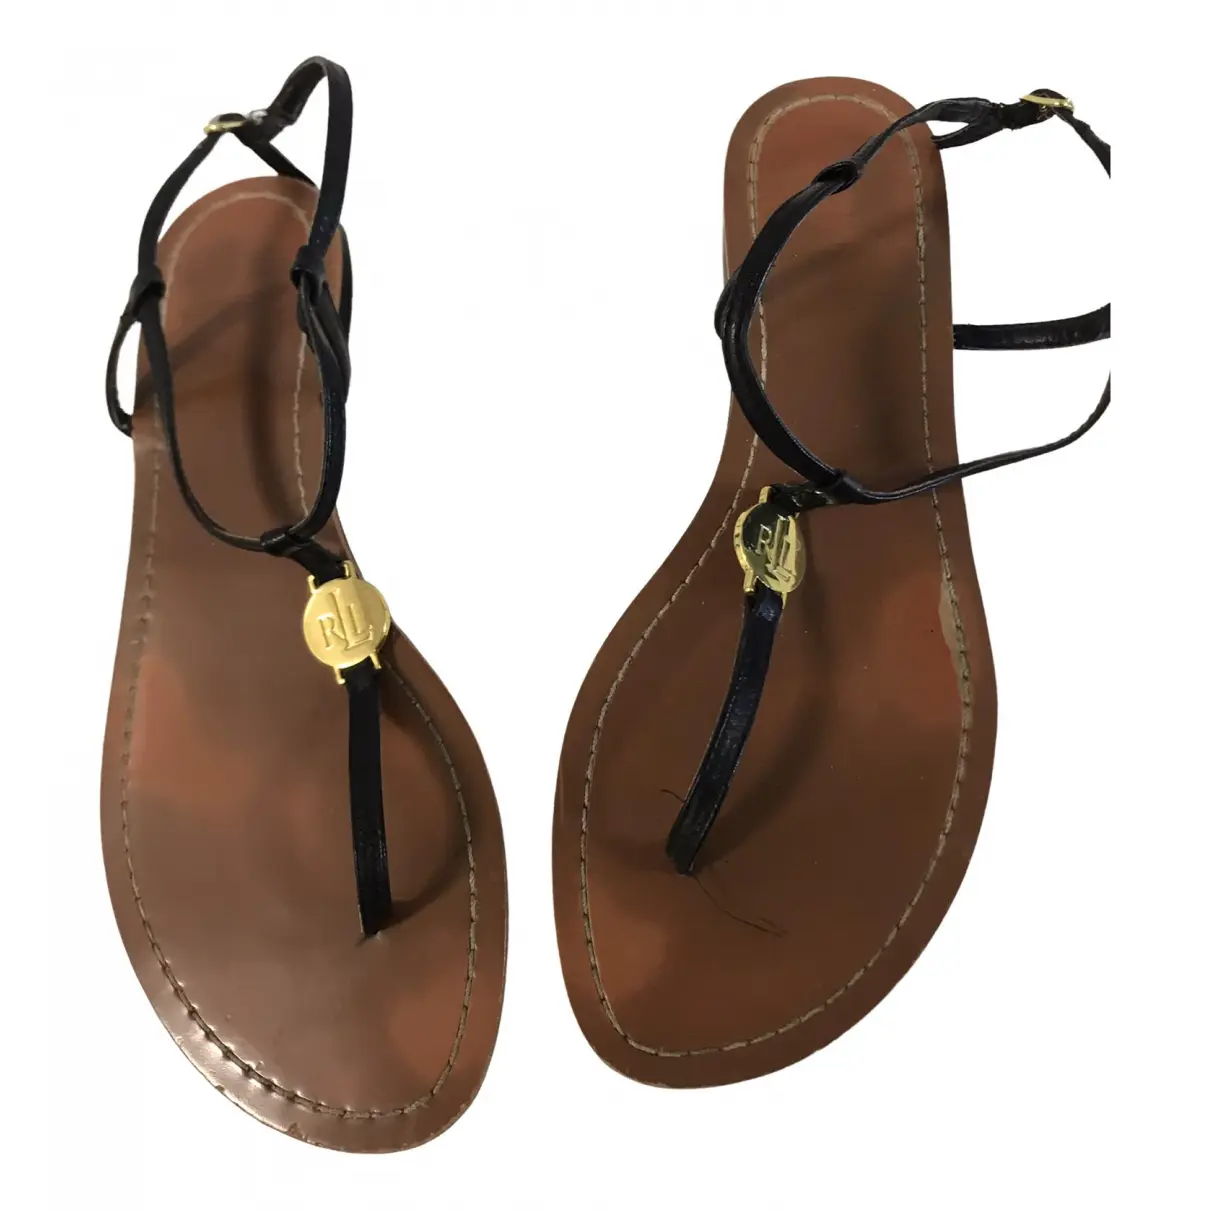 Leather sandals Lauren Ralph Lauren